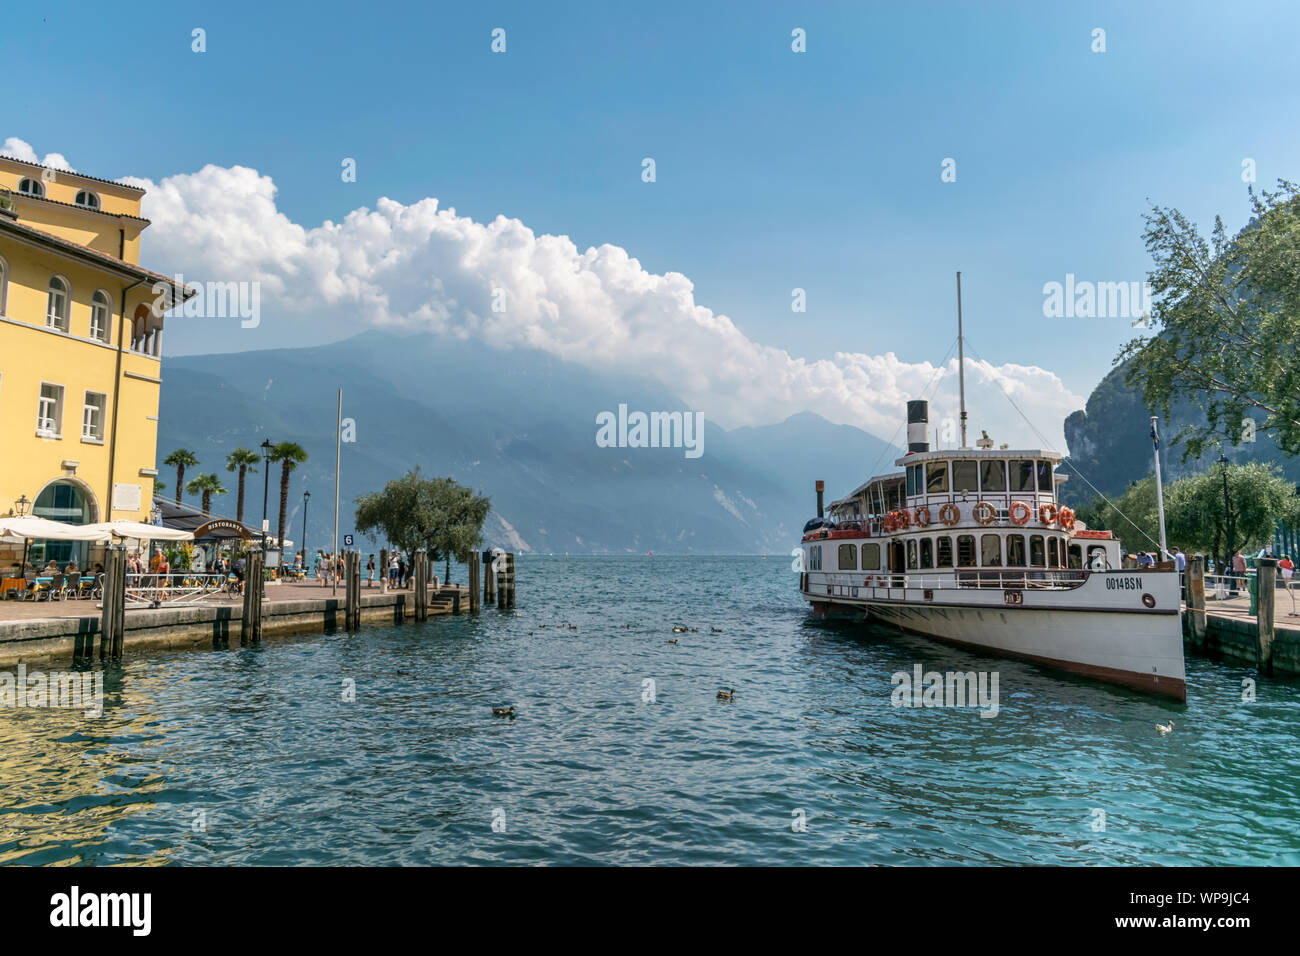 Riva del Garda, Italy -  Aug 1, 2019: An old paddle steamer boat docked at the harbour in Riva del Garda on Lake Garda Stock Photo